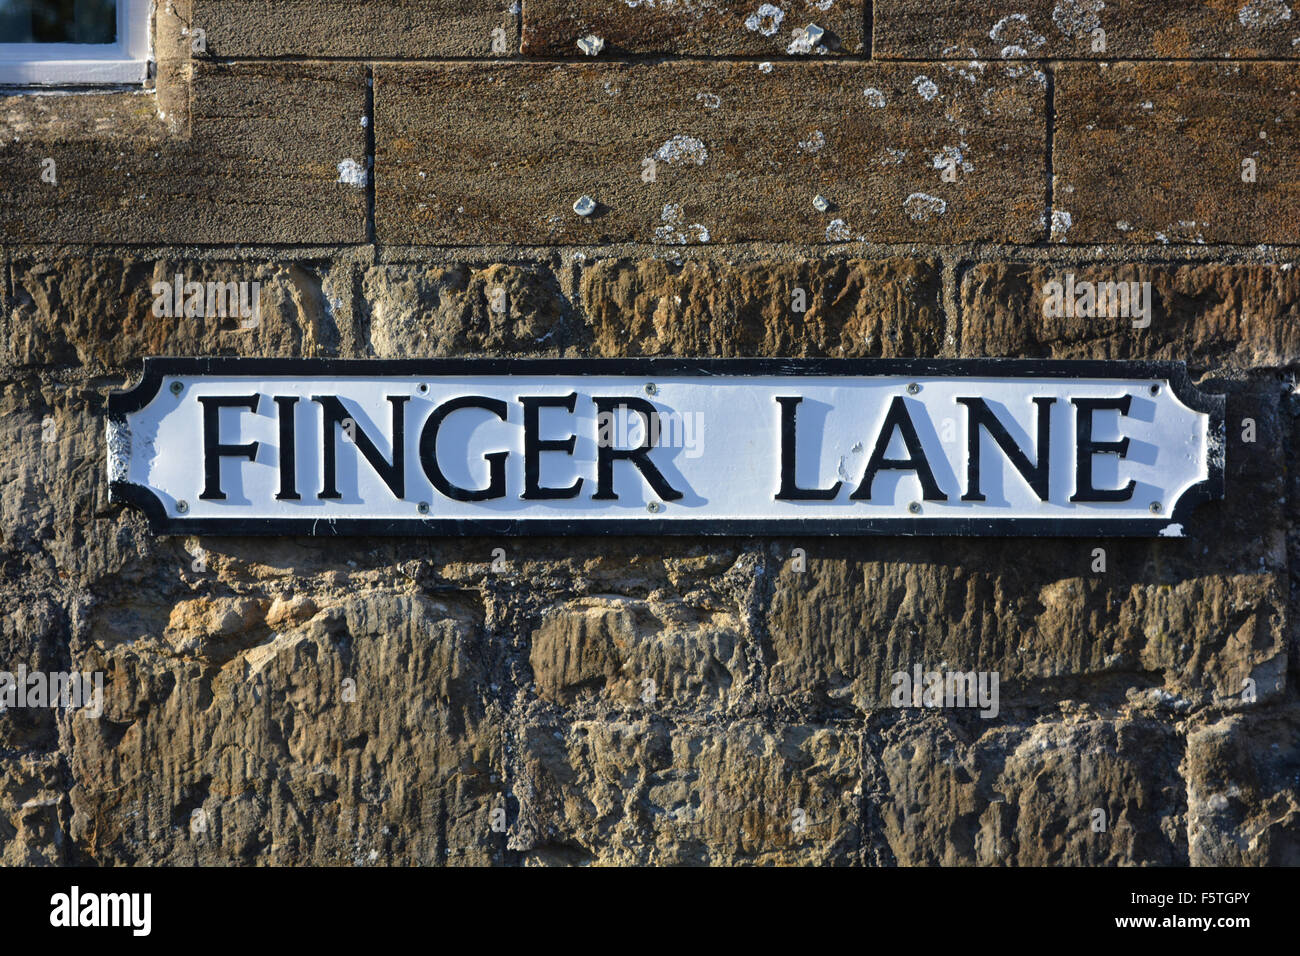 Finger Lane road sign, Sherborne, Dorset Stock Photo